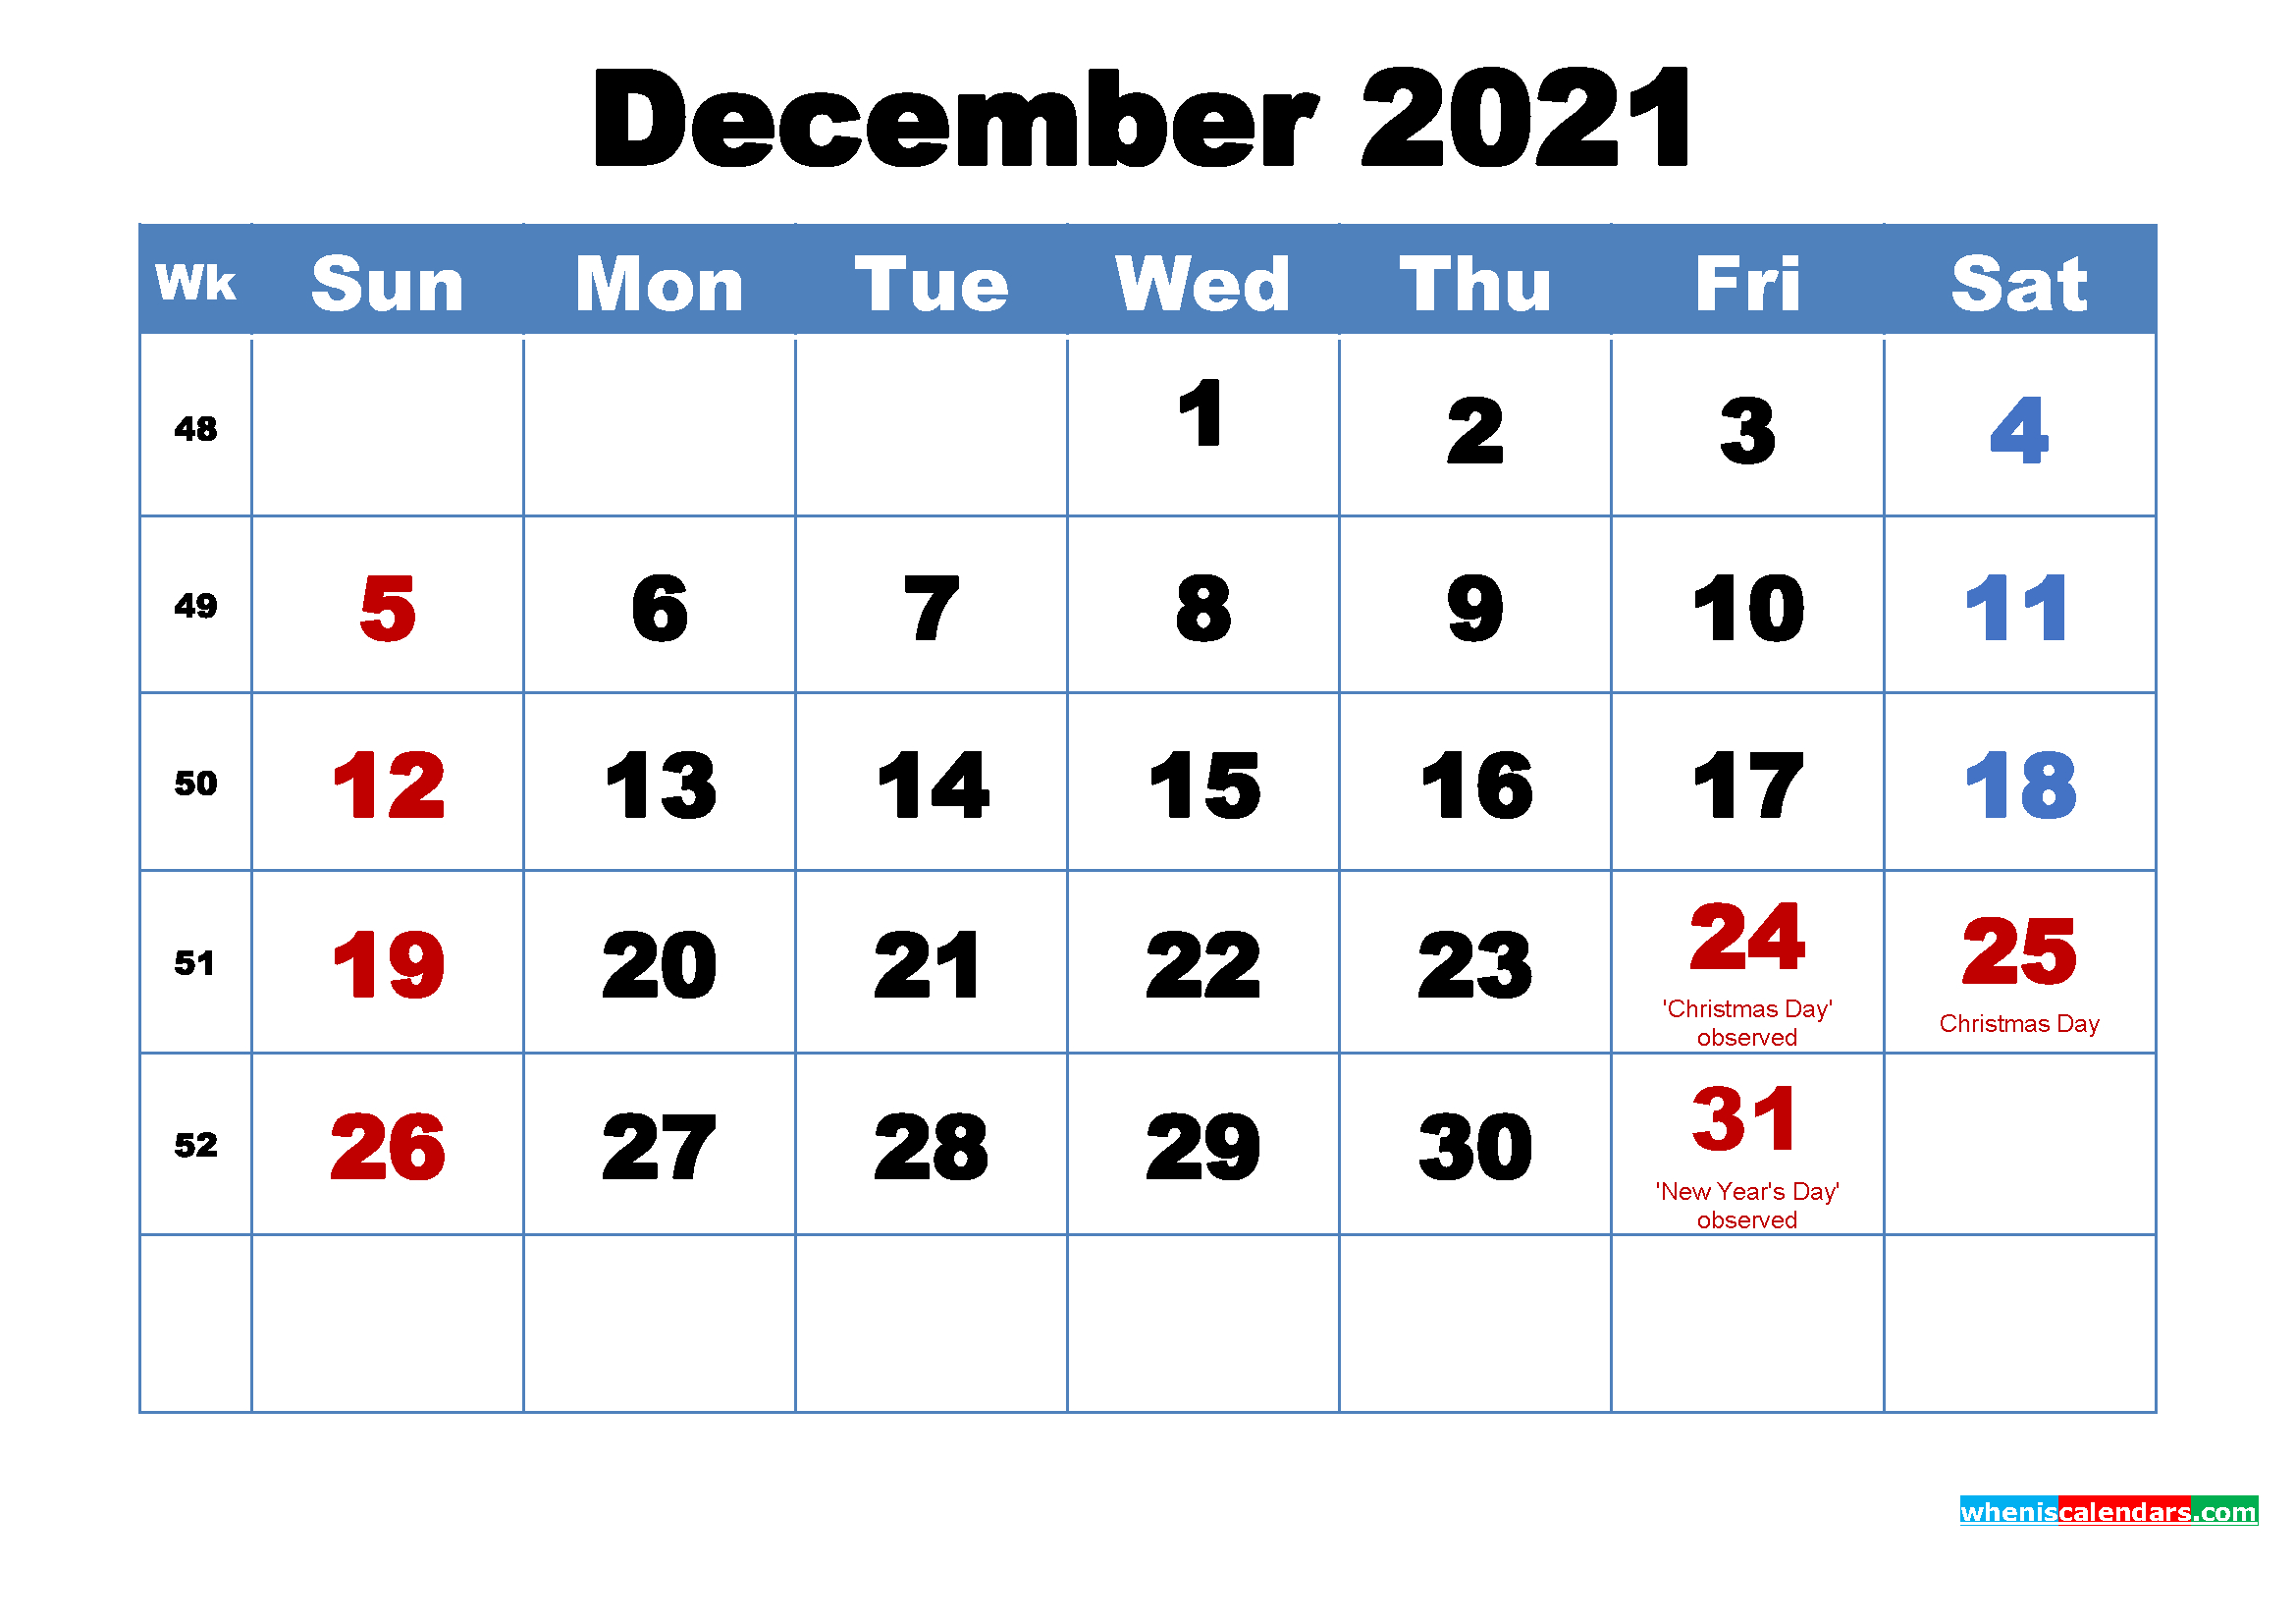 December 2021 Calendar Wallpaper Free Download December 2020 And 2021 Calendar